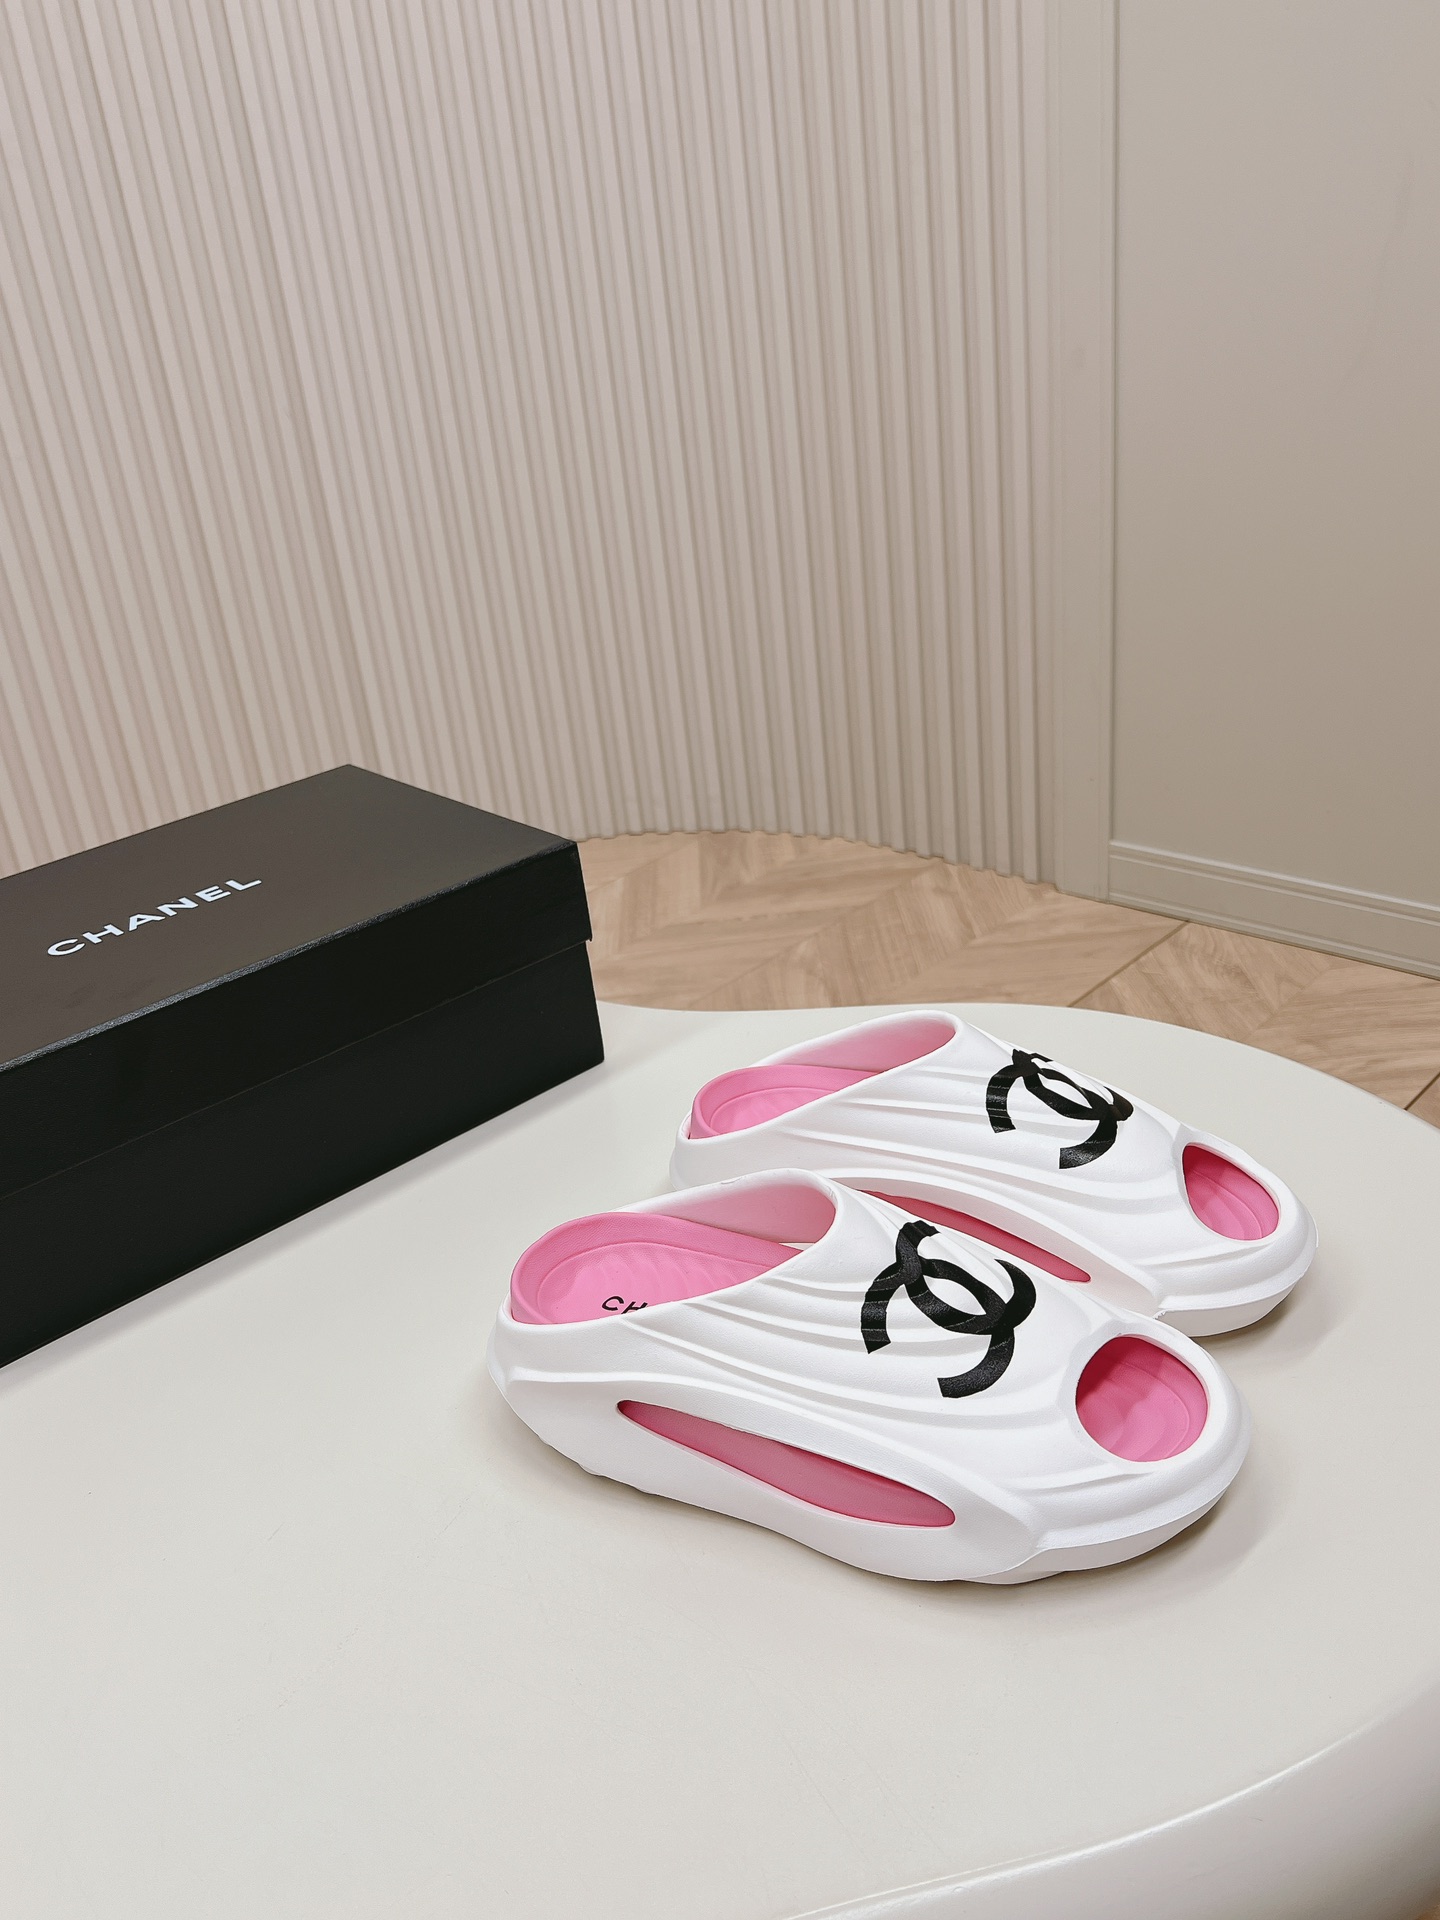 Chanel Speichern
 Schuhe Badelatschen Bester Qualitätsdesigner
 Schwarz Unisex Frauen